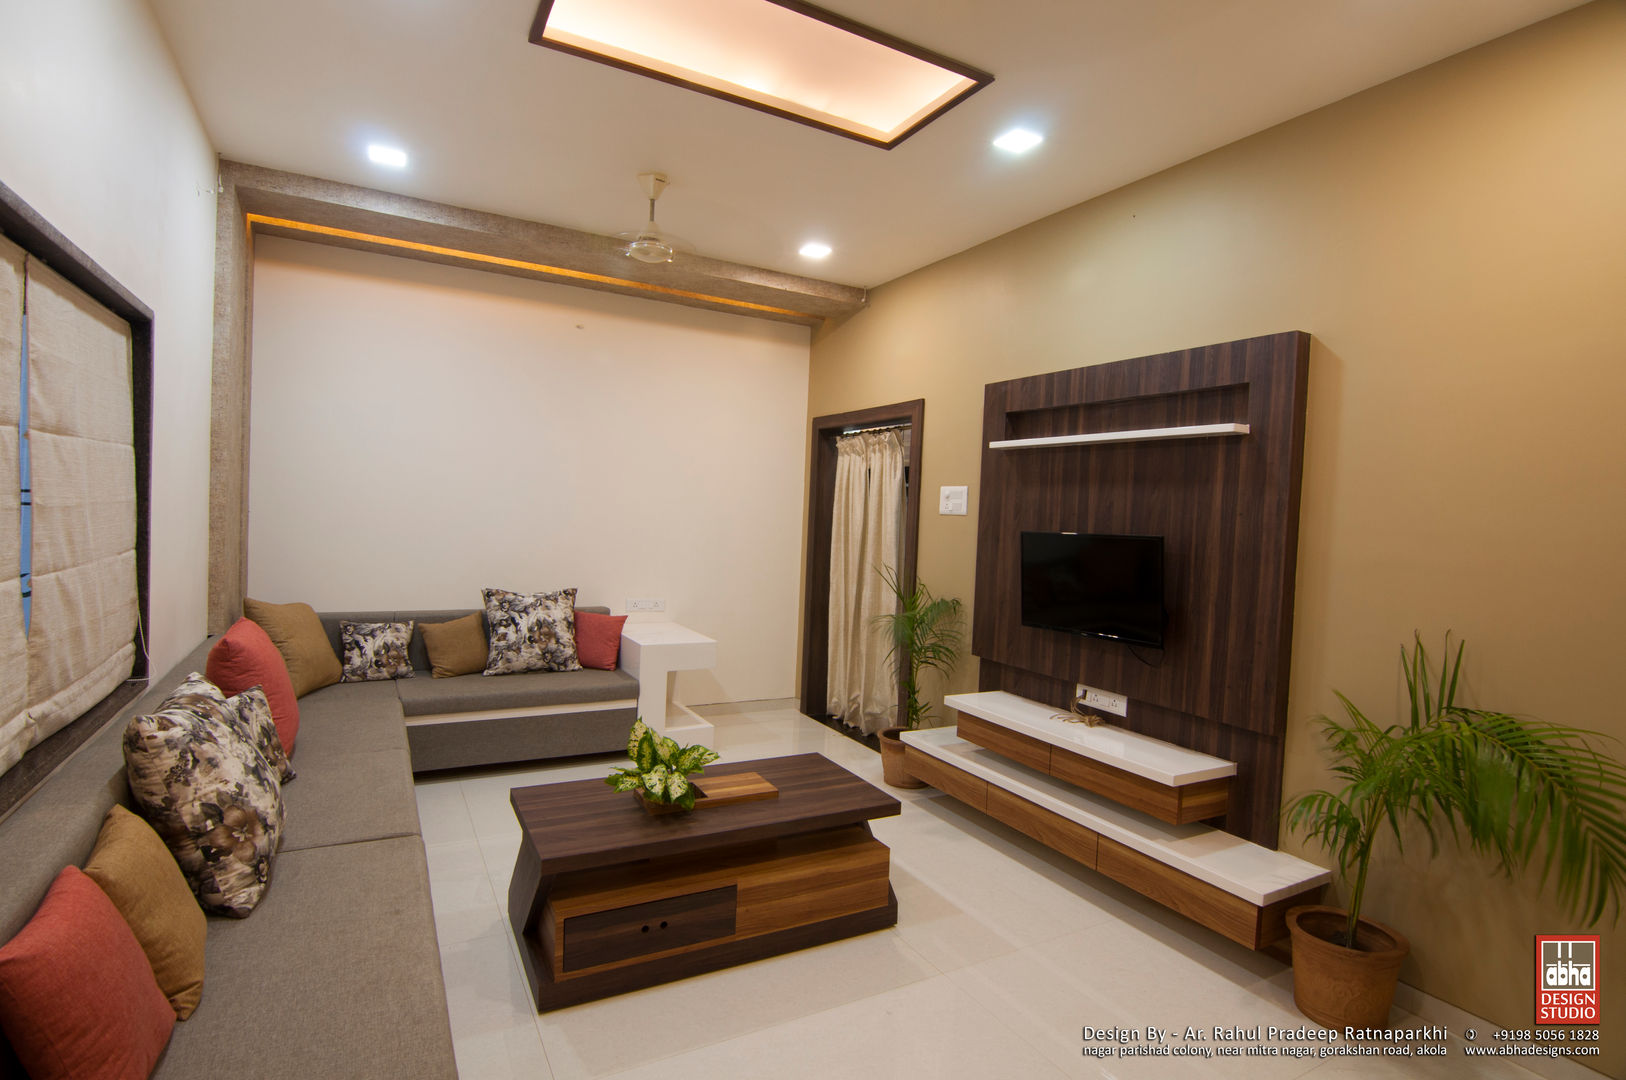 Interior of Residence for Mr. Chandrashekhar R, ABHA Design Studio ABHA Design Studio Livings de estilo minimalista Muebles de televisión y dispositivos electrónicos